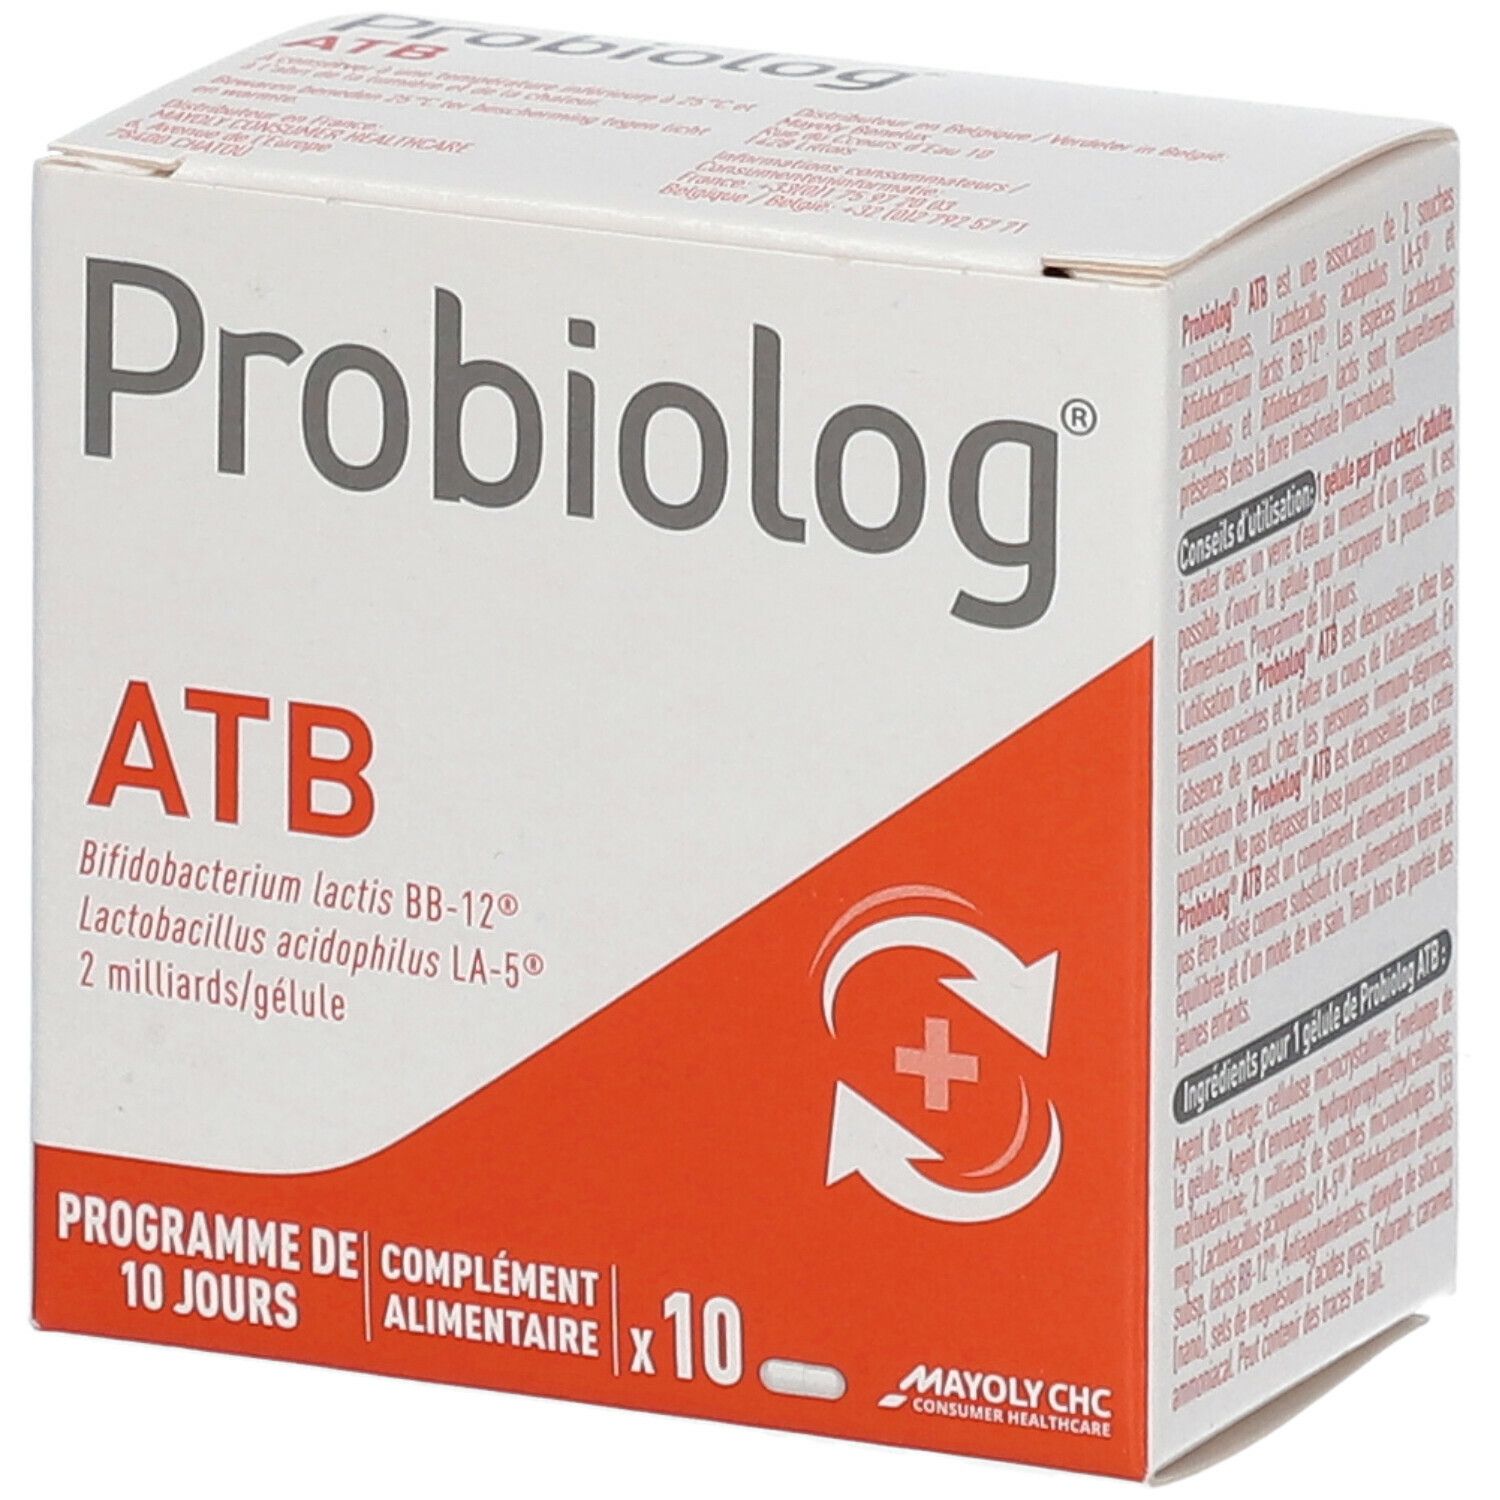 Probiolog® ATB